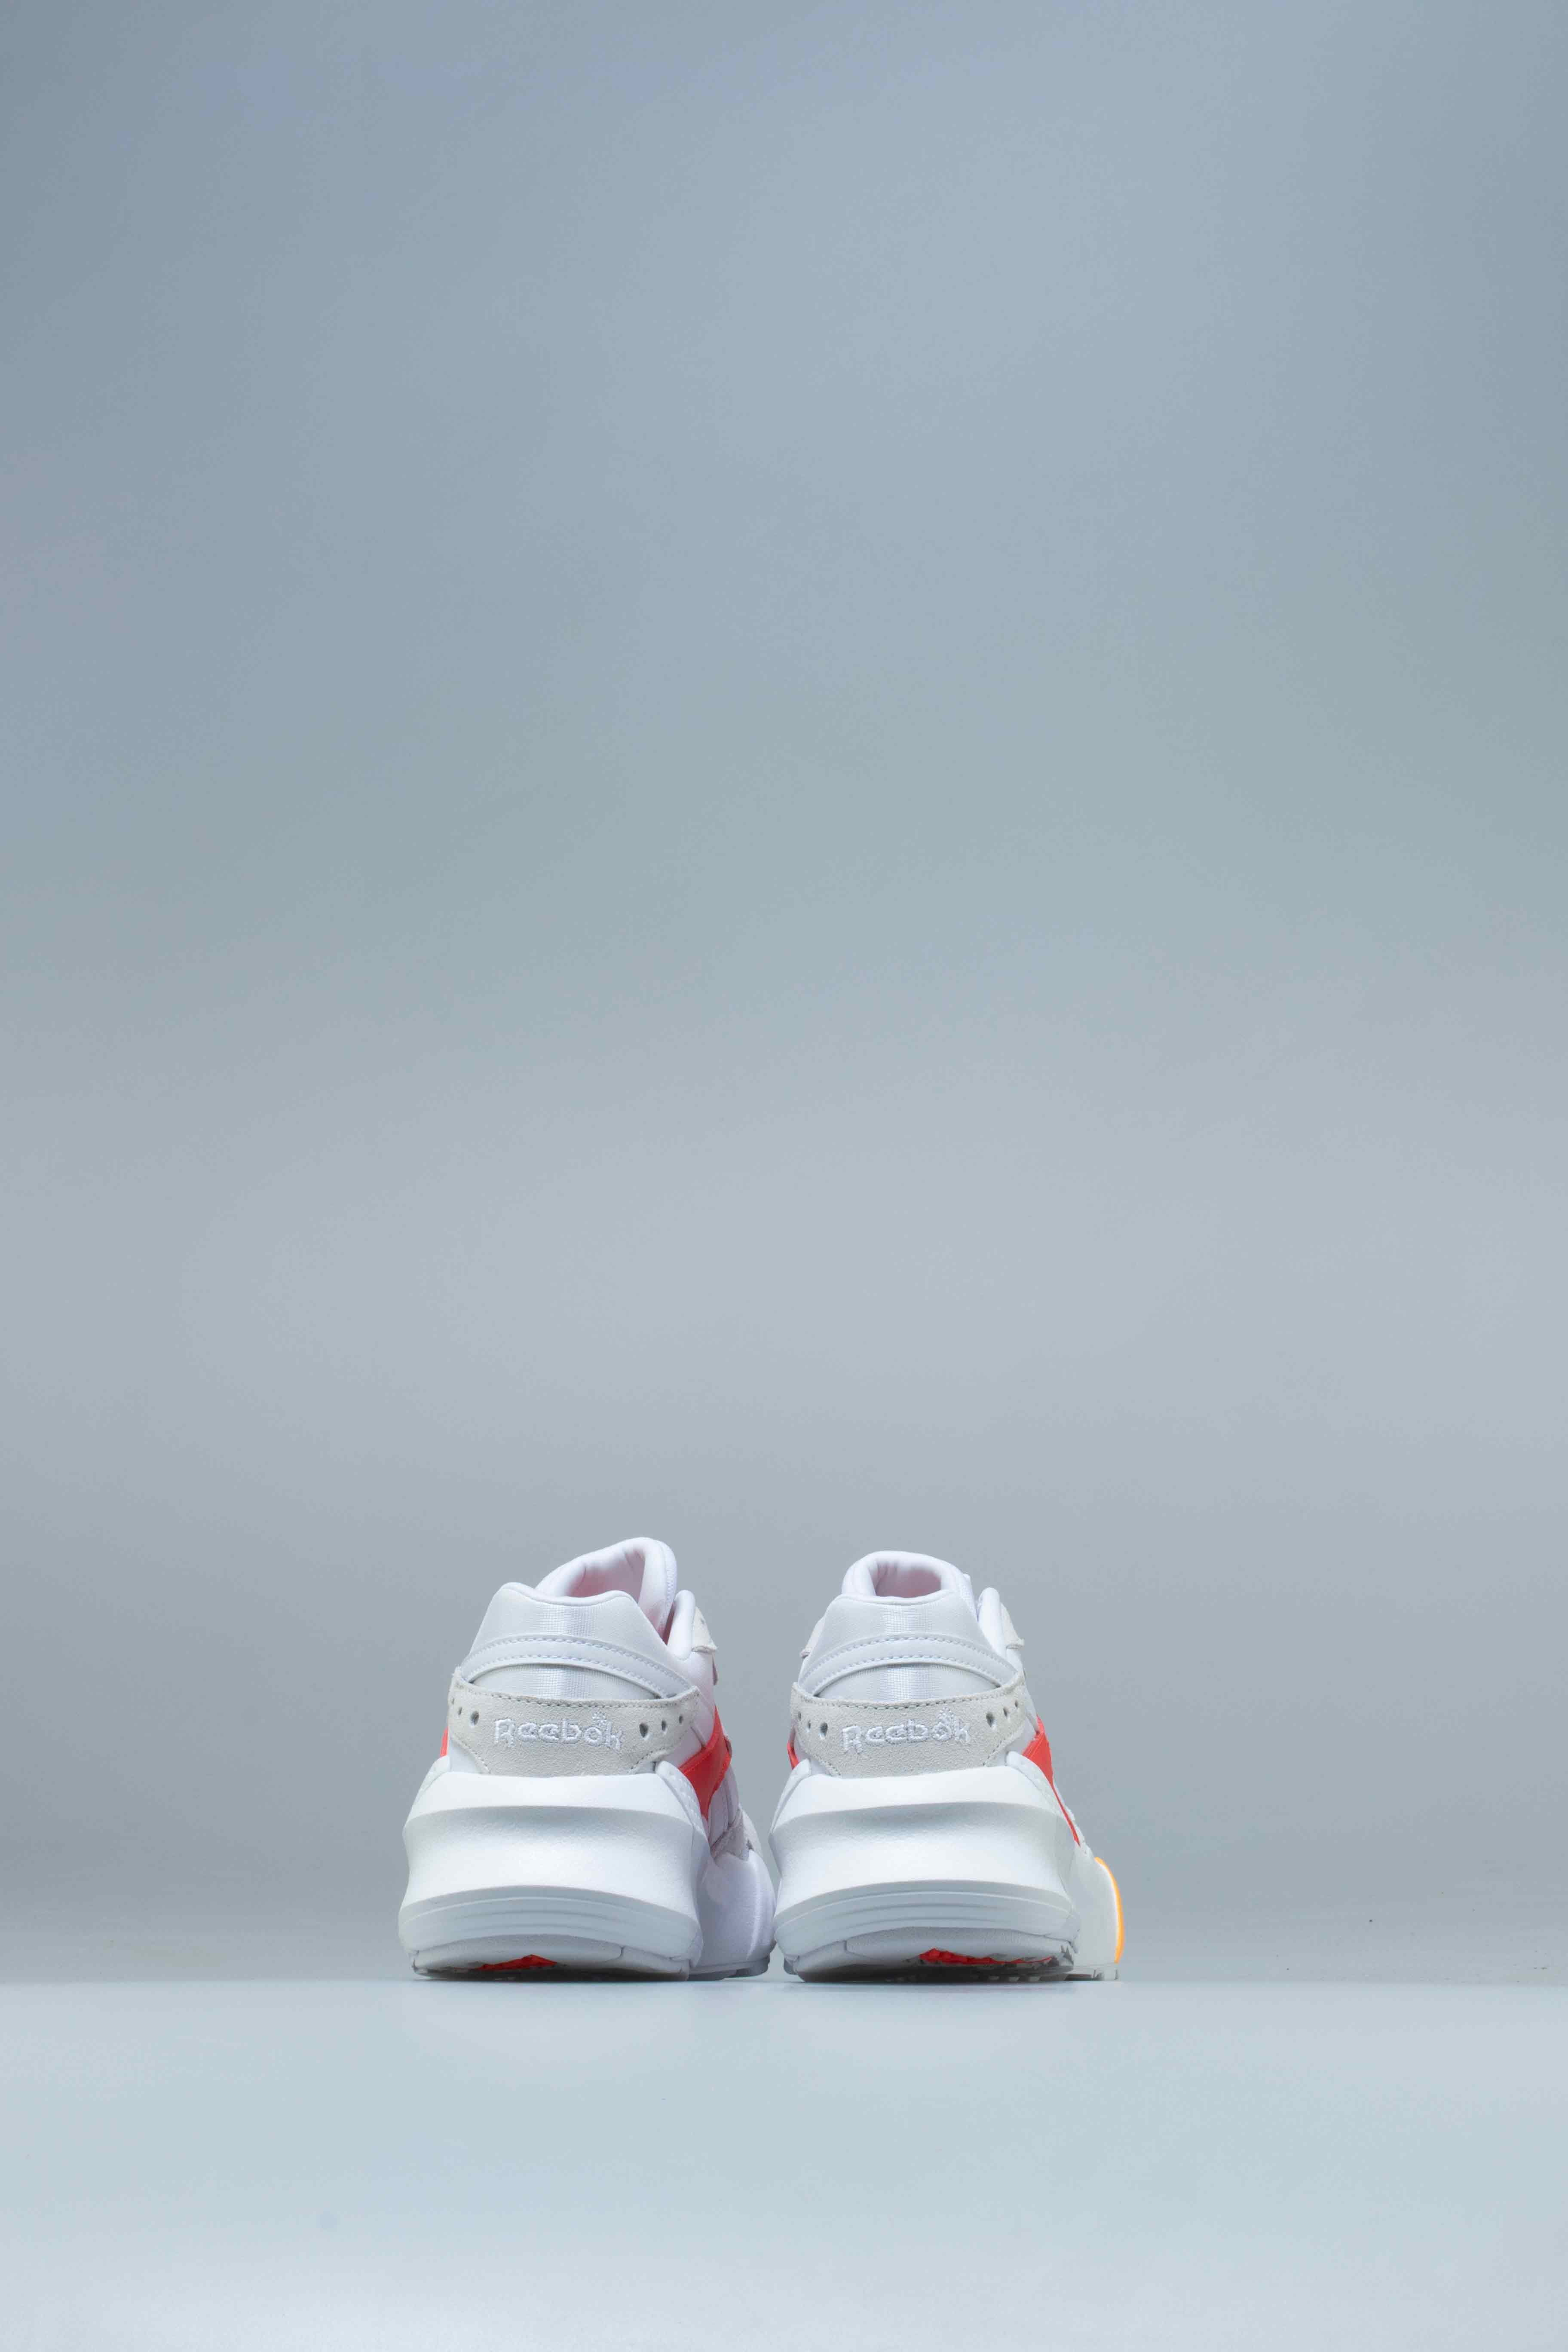 LV x Supreme x Nike Air Huarache White Red